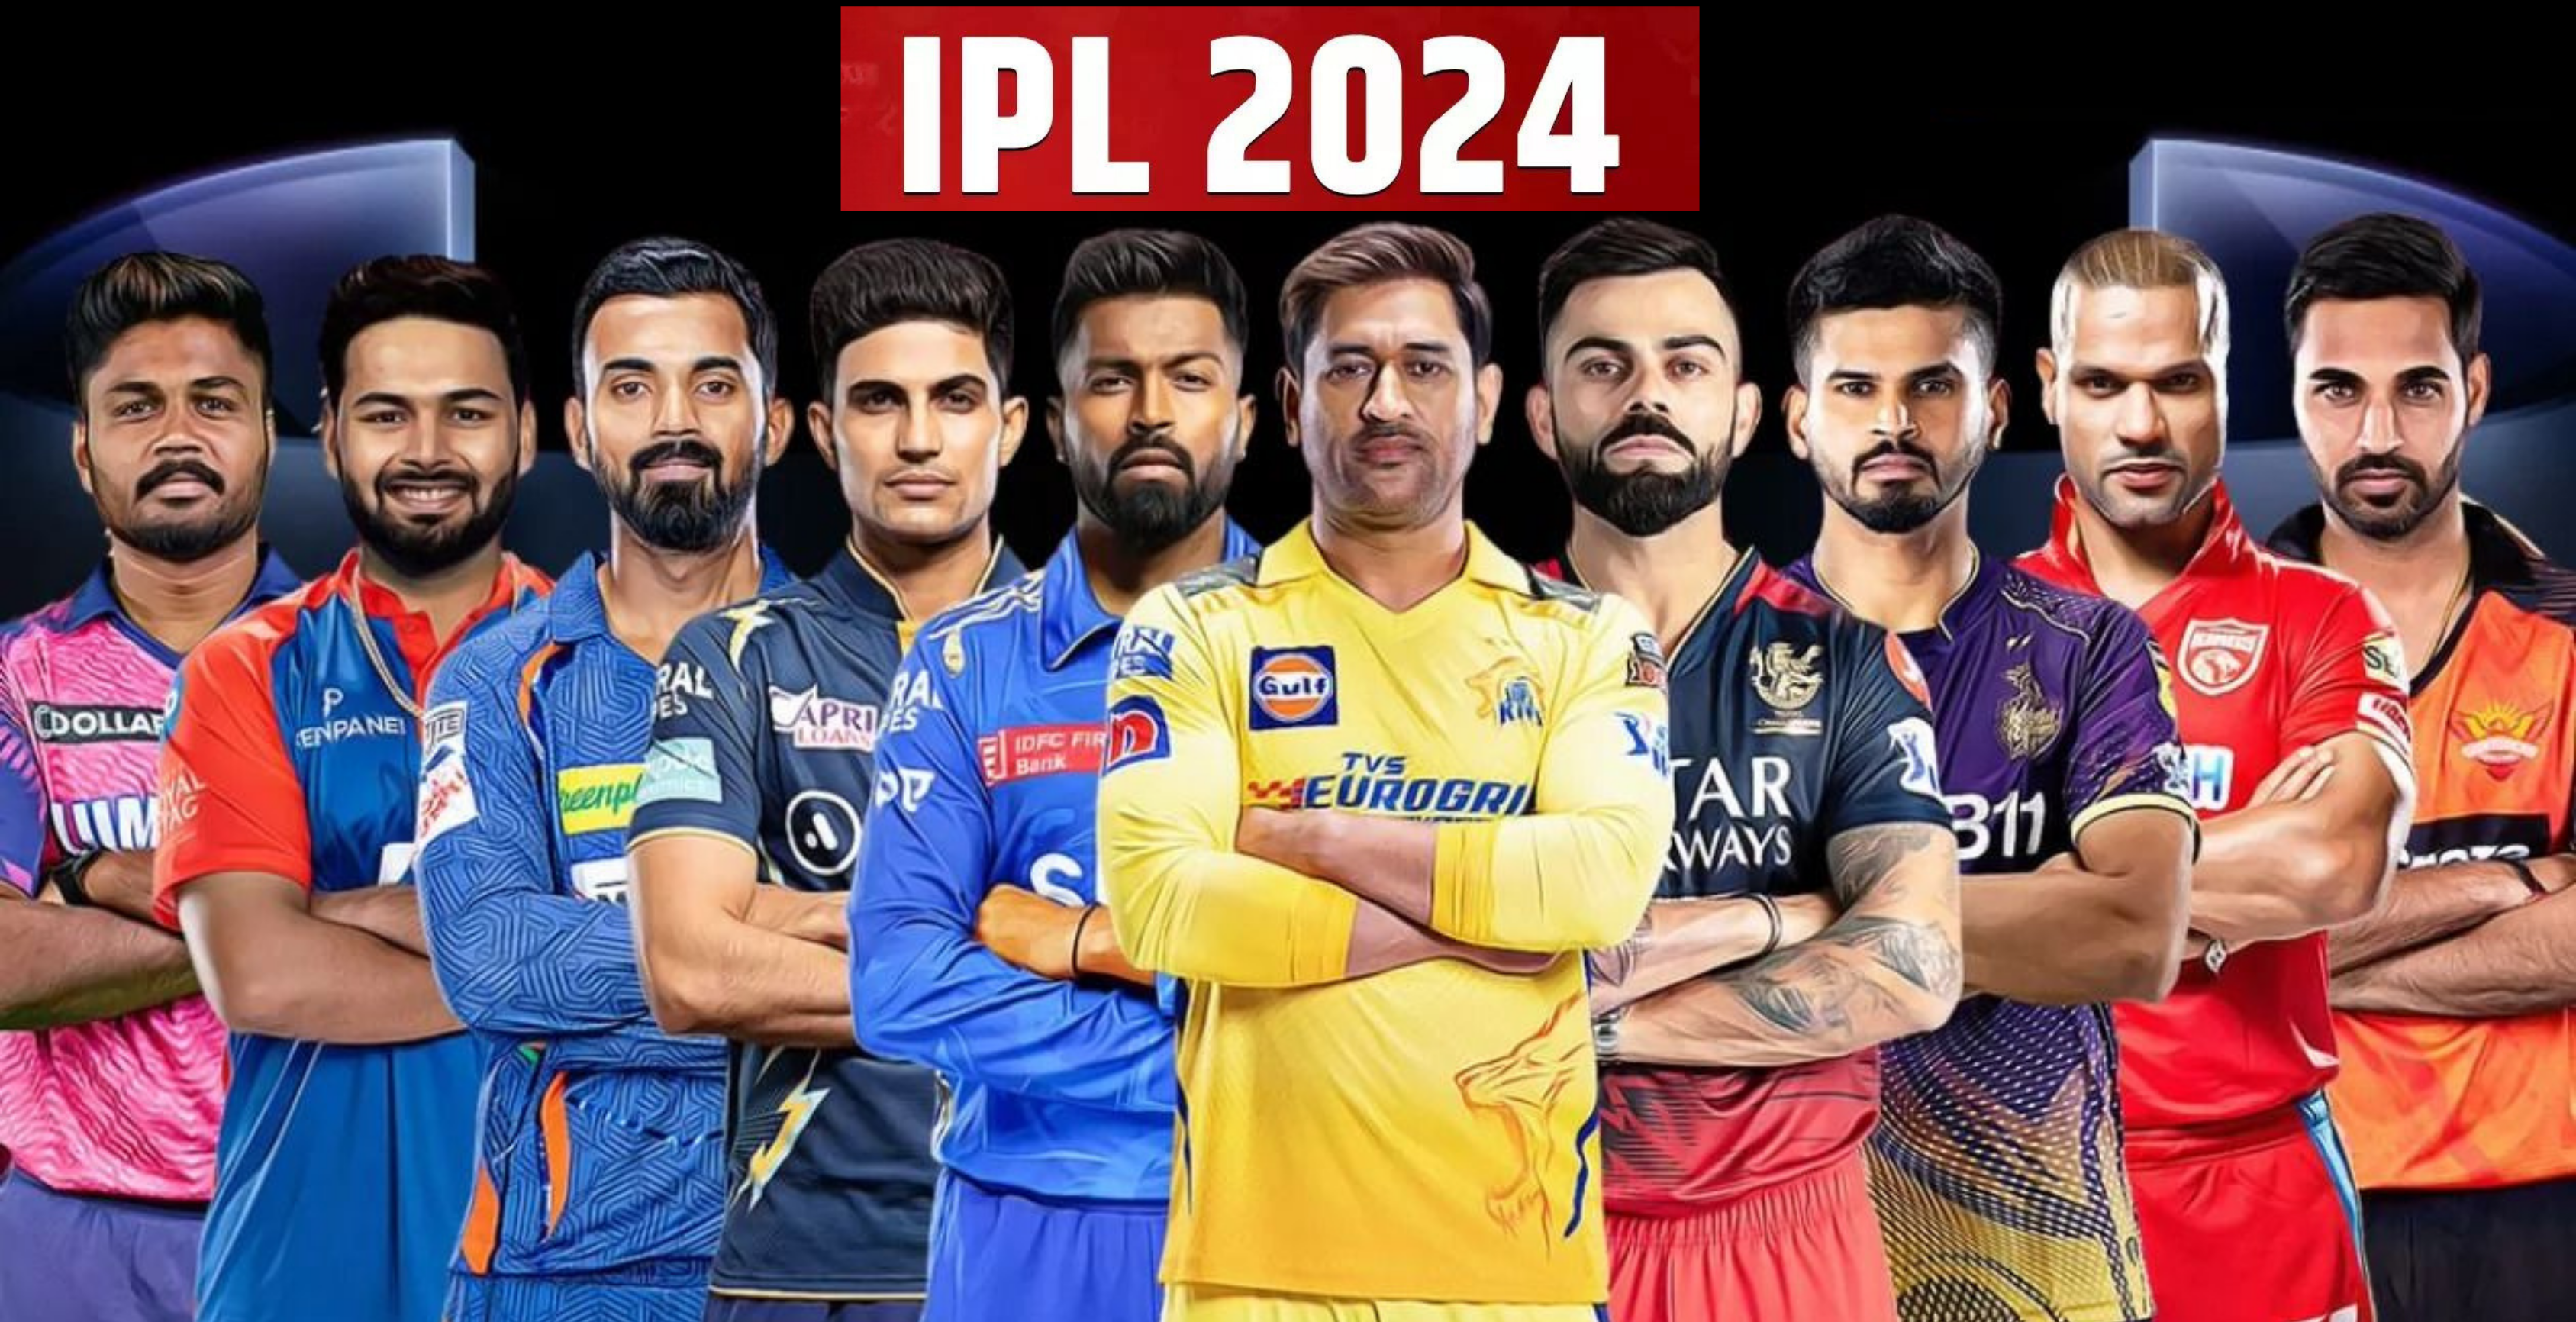 IPL Schedule 2024 Indian Primier league (IPL 2024) 22 मार्च 2024 से शुरू होकर 29 में 2024 तक दुनिया भर के सभी क्रिकेटर्स दर्शकों का मनोरंजन करने के लिए तैयार हैं टाटा के द्वारा स्पॉन्सर किया गया यह 17th सीरीज है भारतीय क्रिकेट कंट्रोल बोर्ड (BCCI )द्वारा आयोजित किया गया है